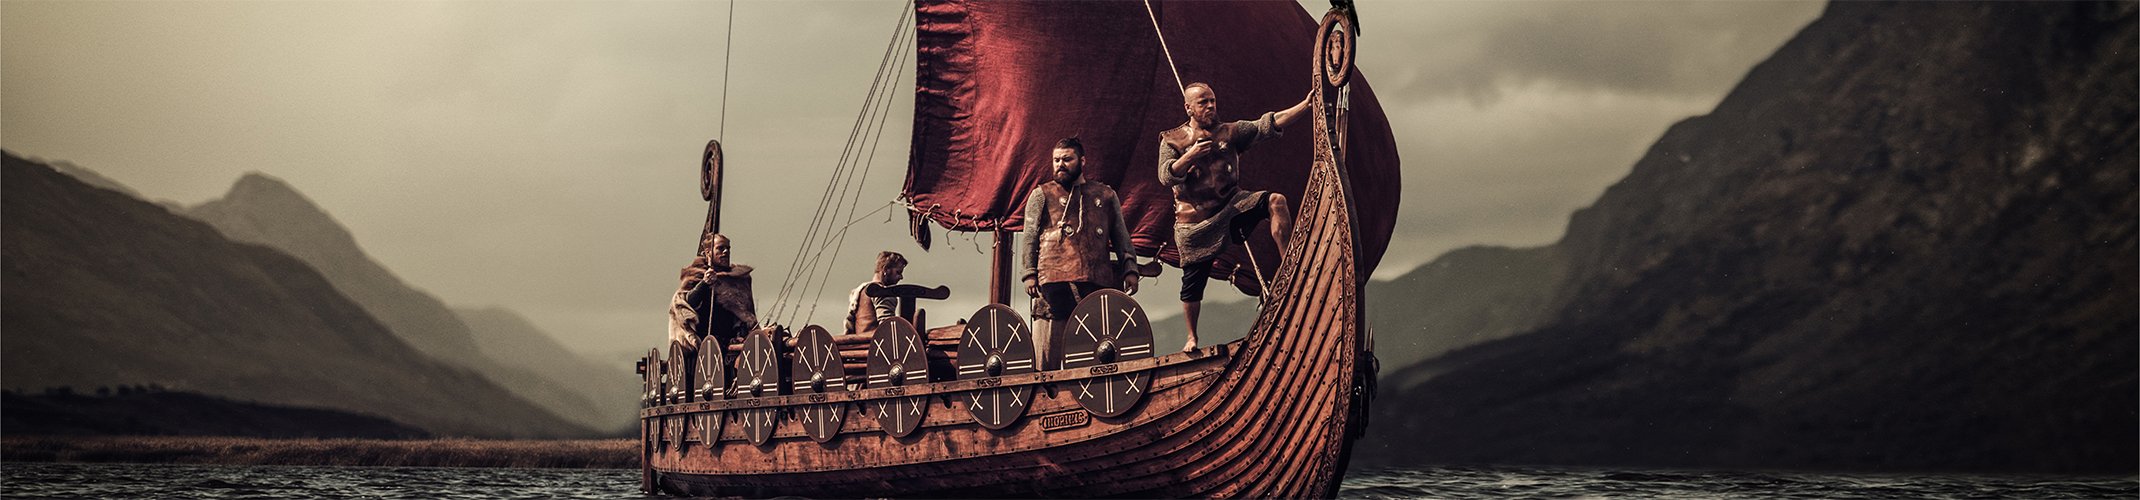 The Vikings of Norway